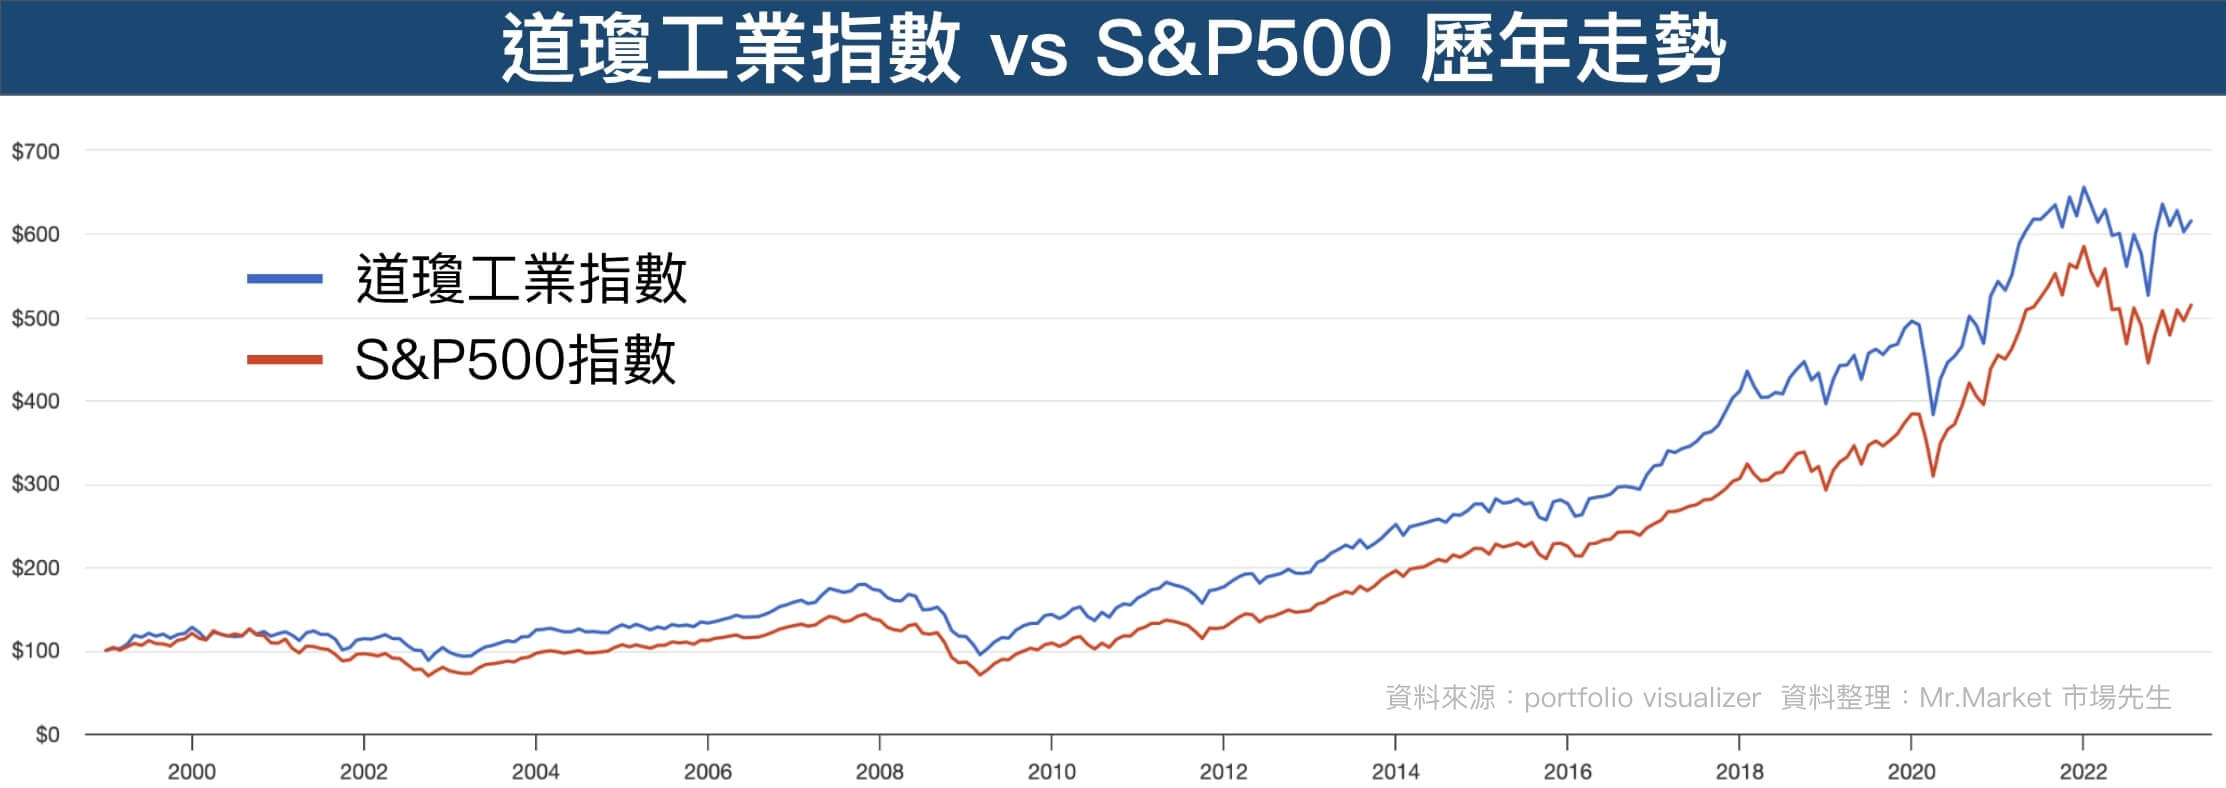 道瓊工業指數-S&P500-走勢比較